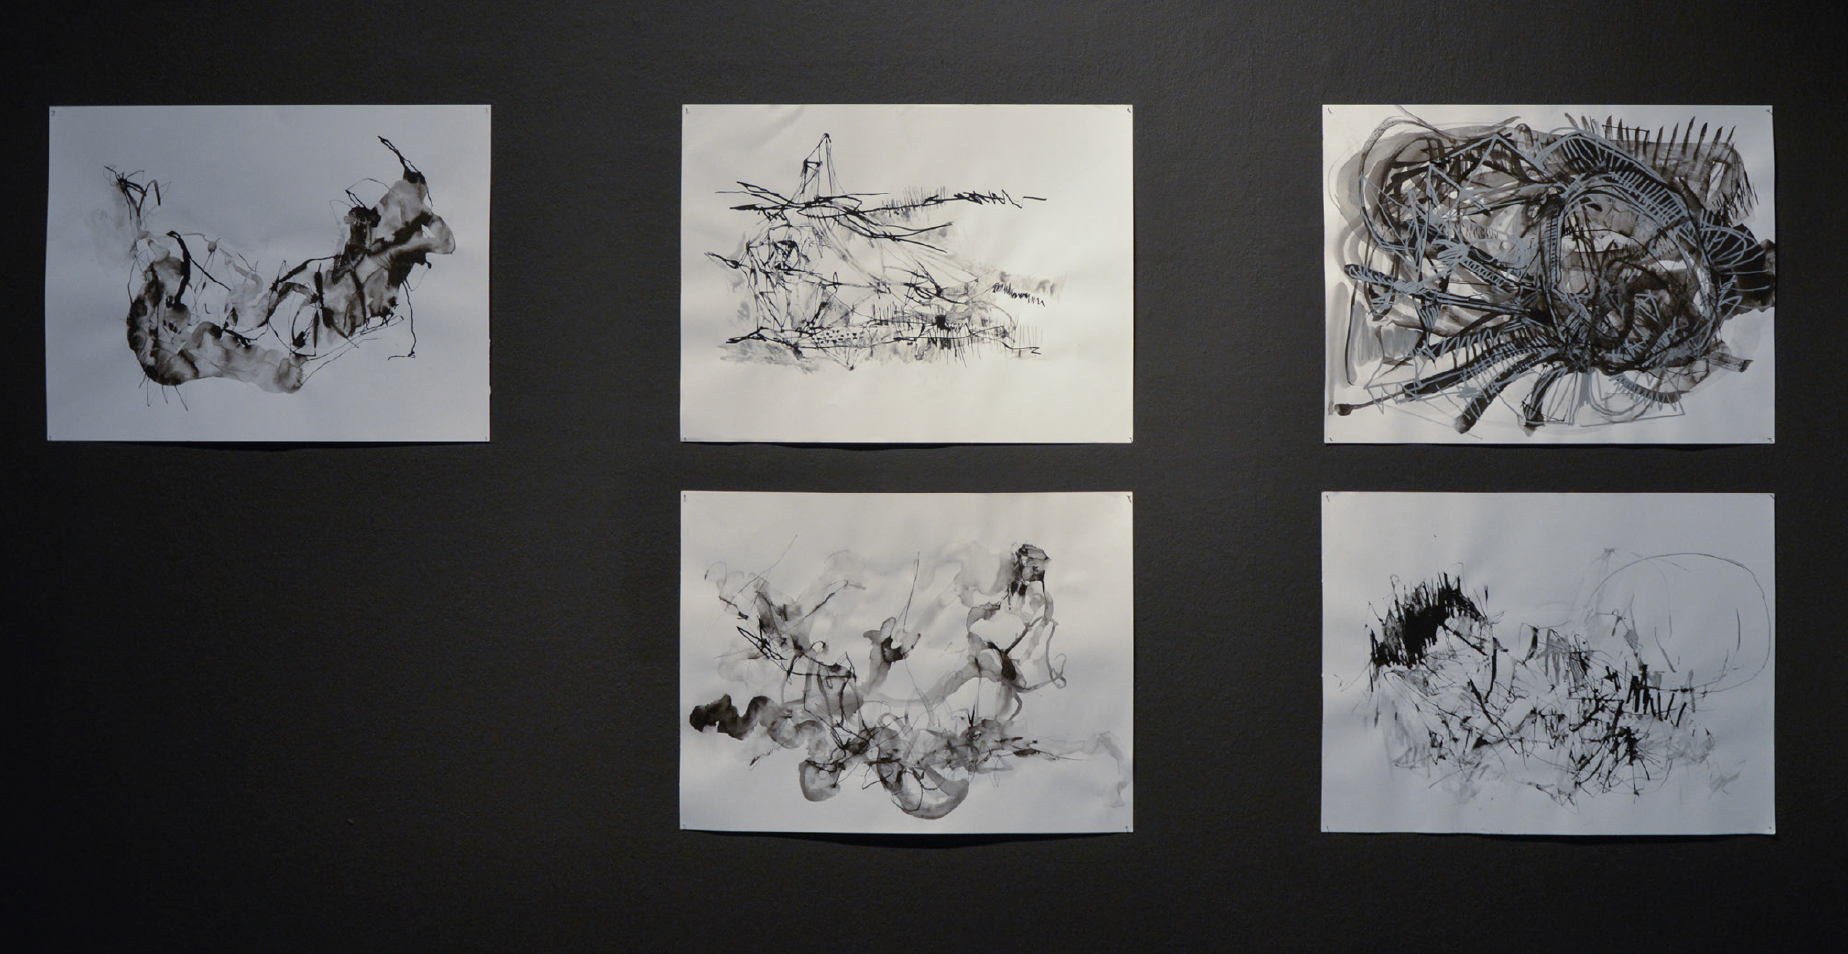 Detalle de algunos de los dibujos en tinta china mostrados en la exposición.